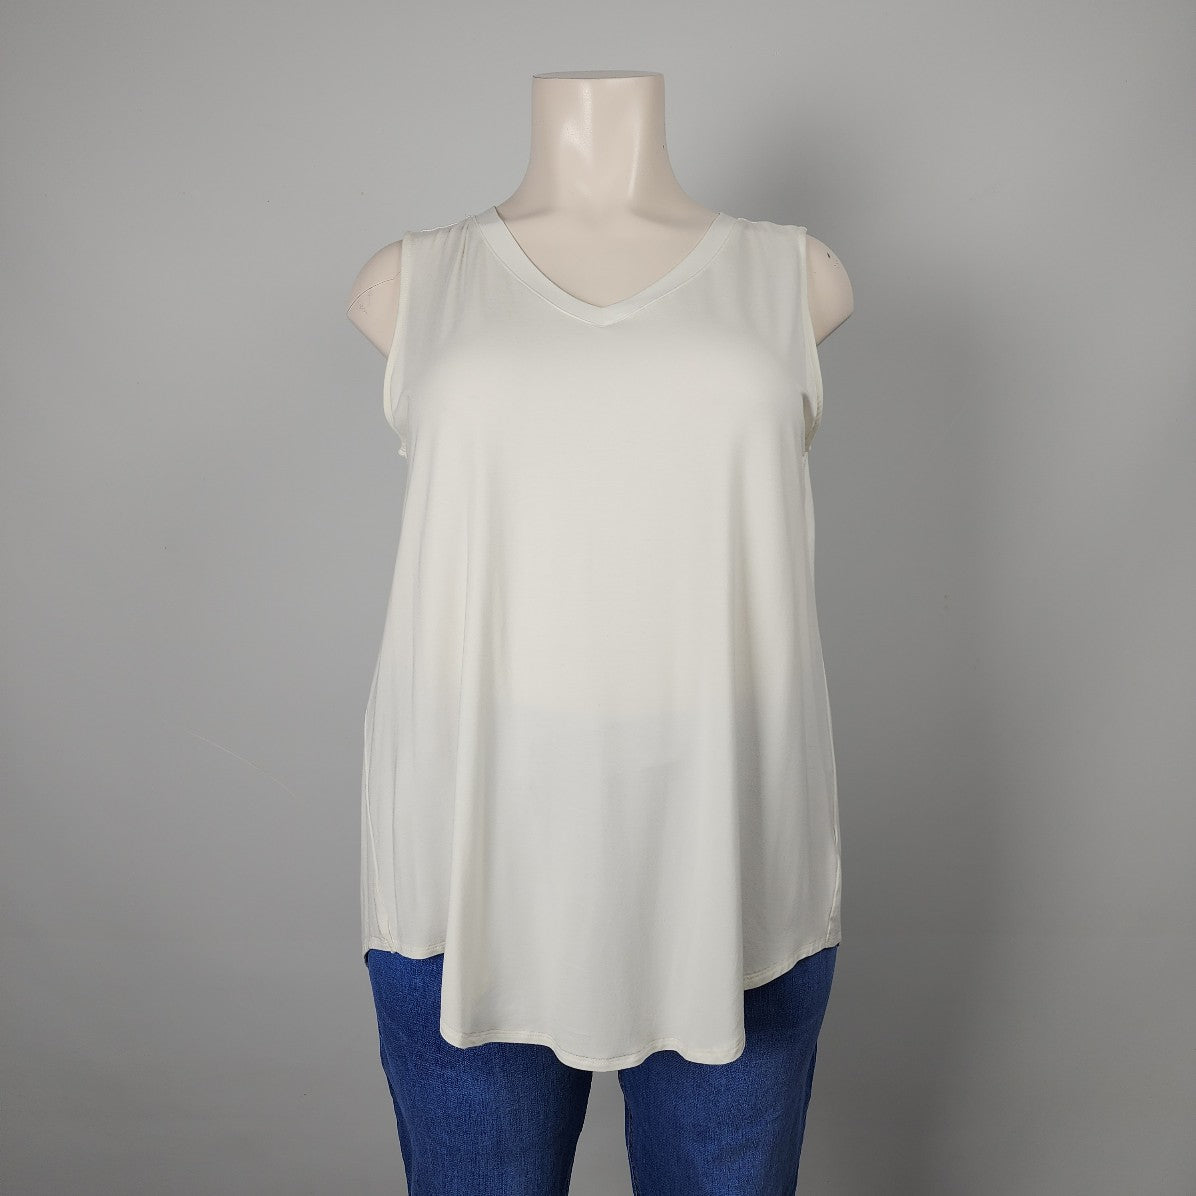 Zenana White Jersey Sleeveless Top Size 3X